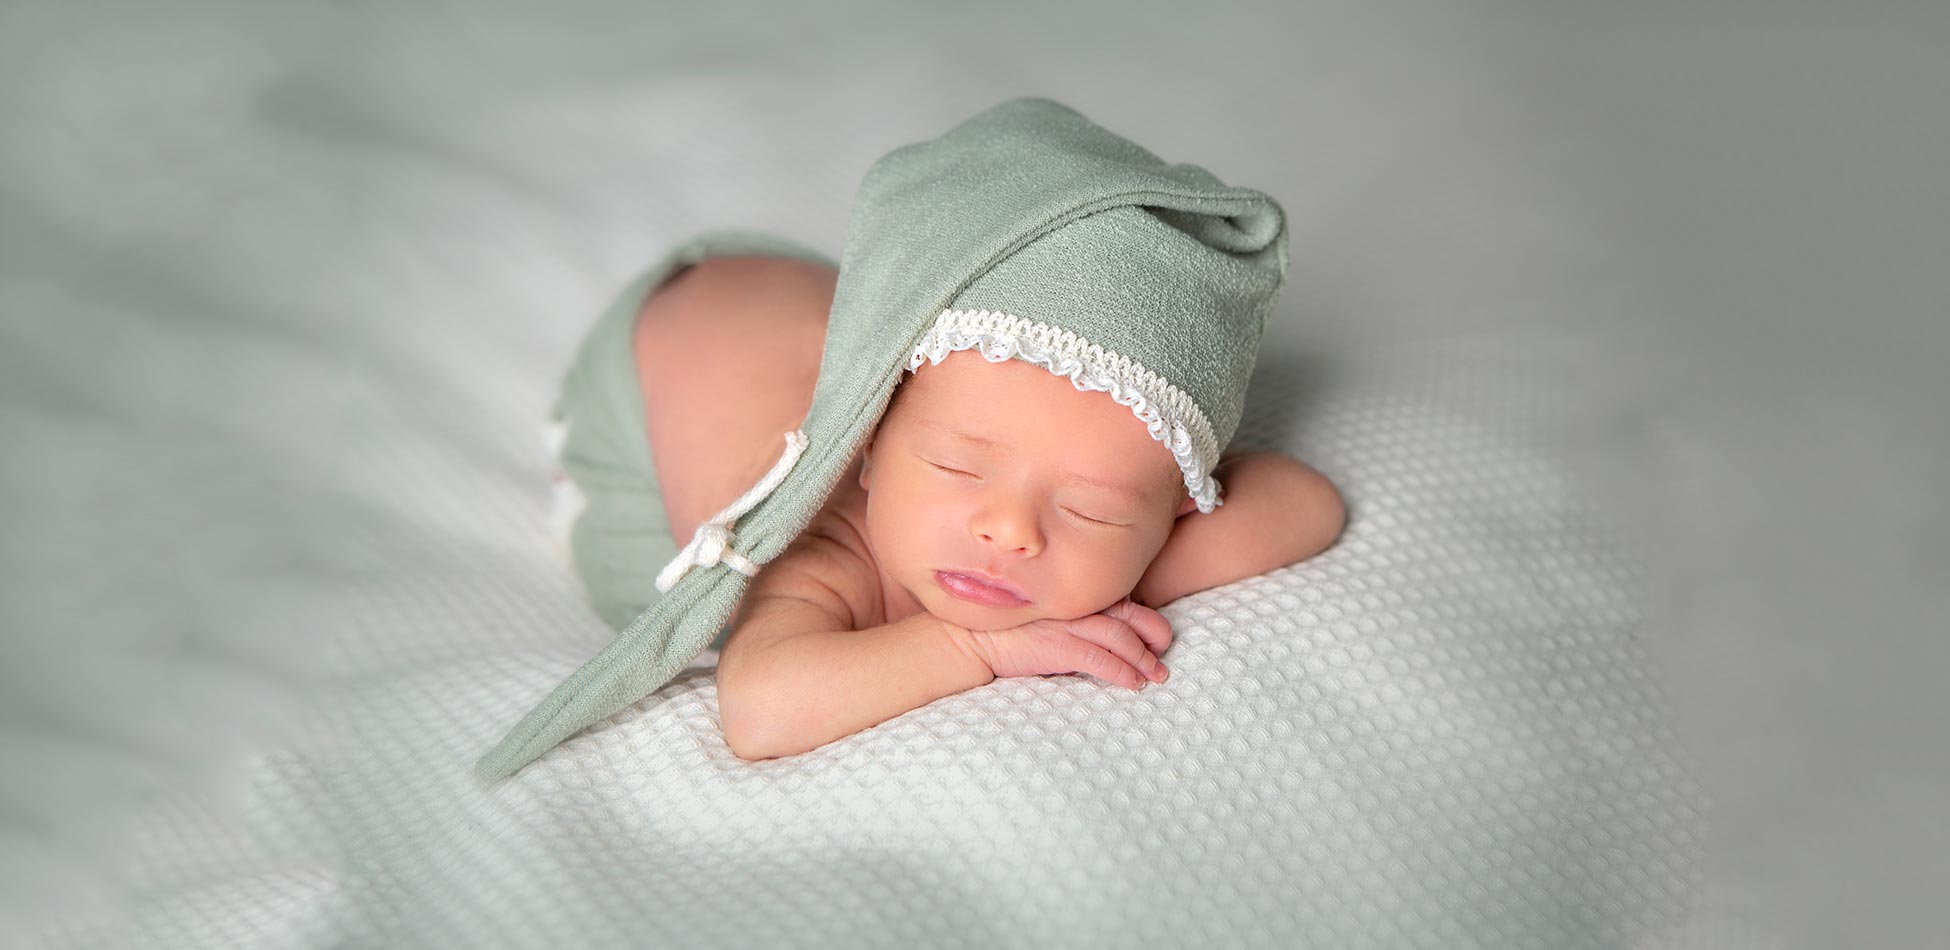 Imagenesacontraluz, fotos de embarazos y newborn